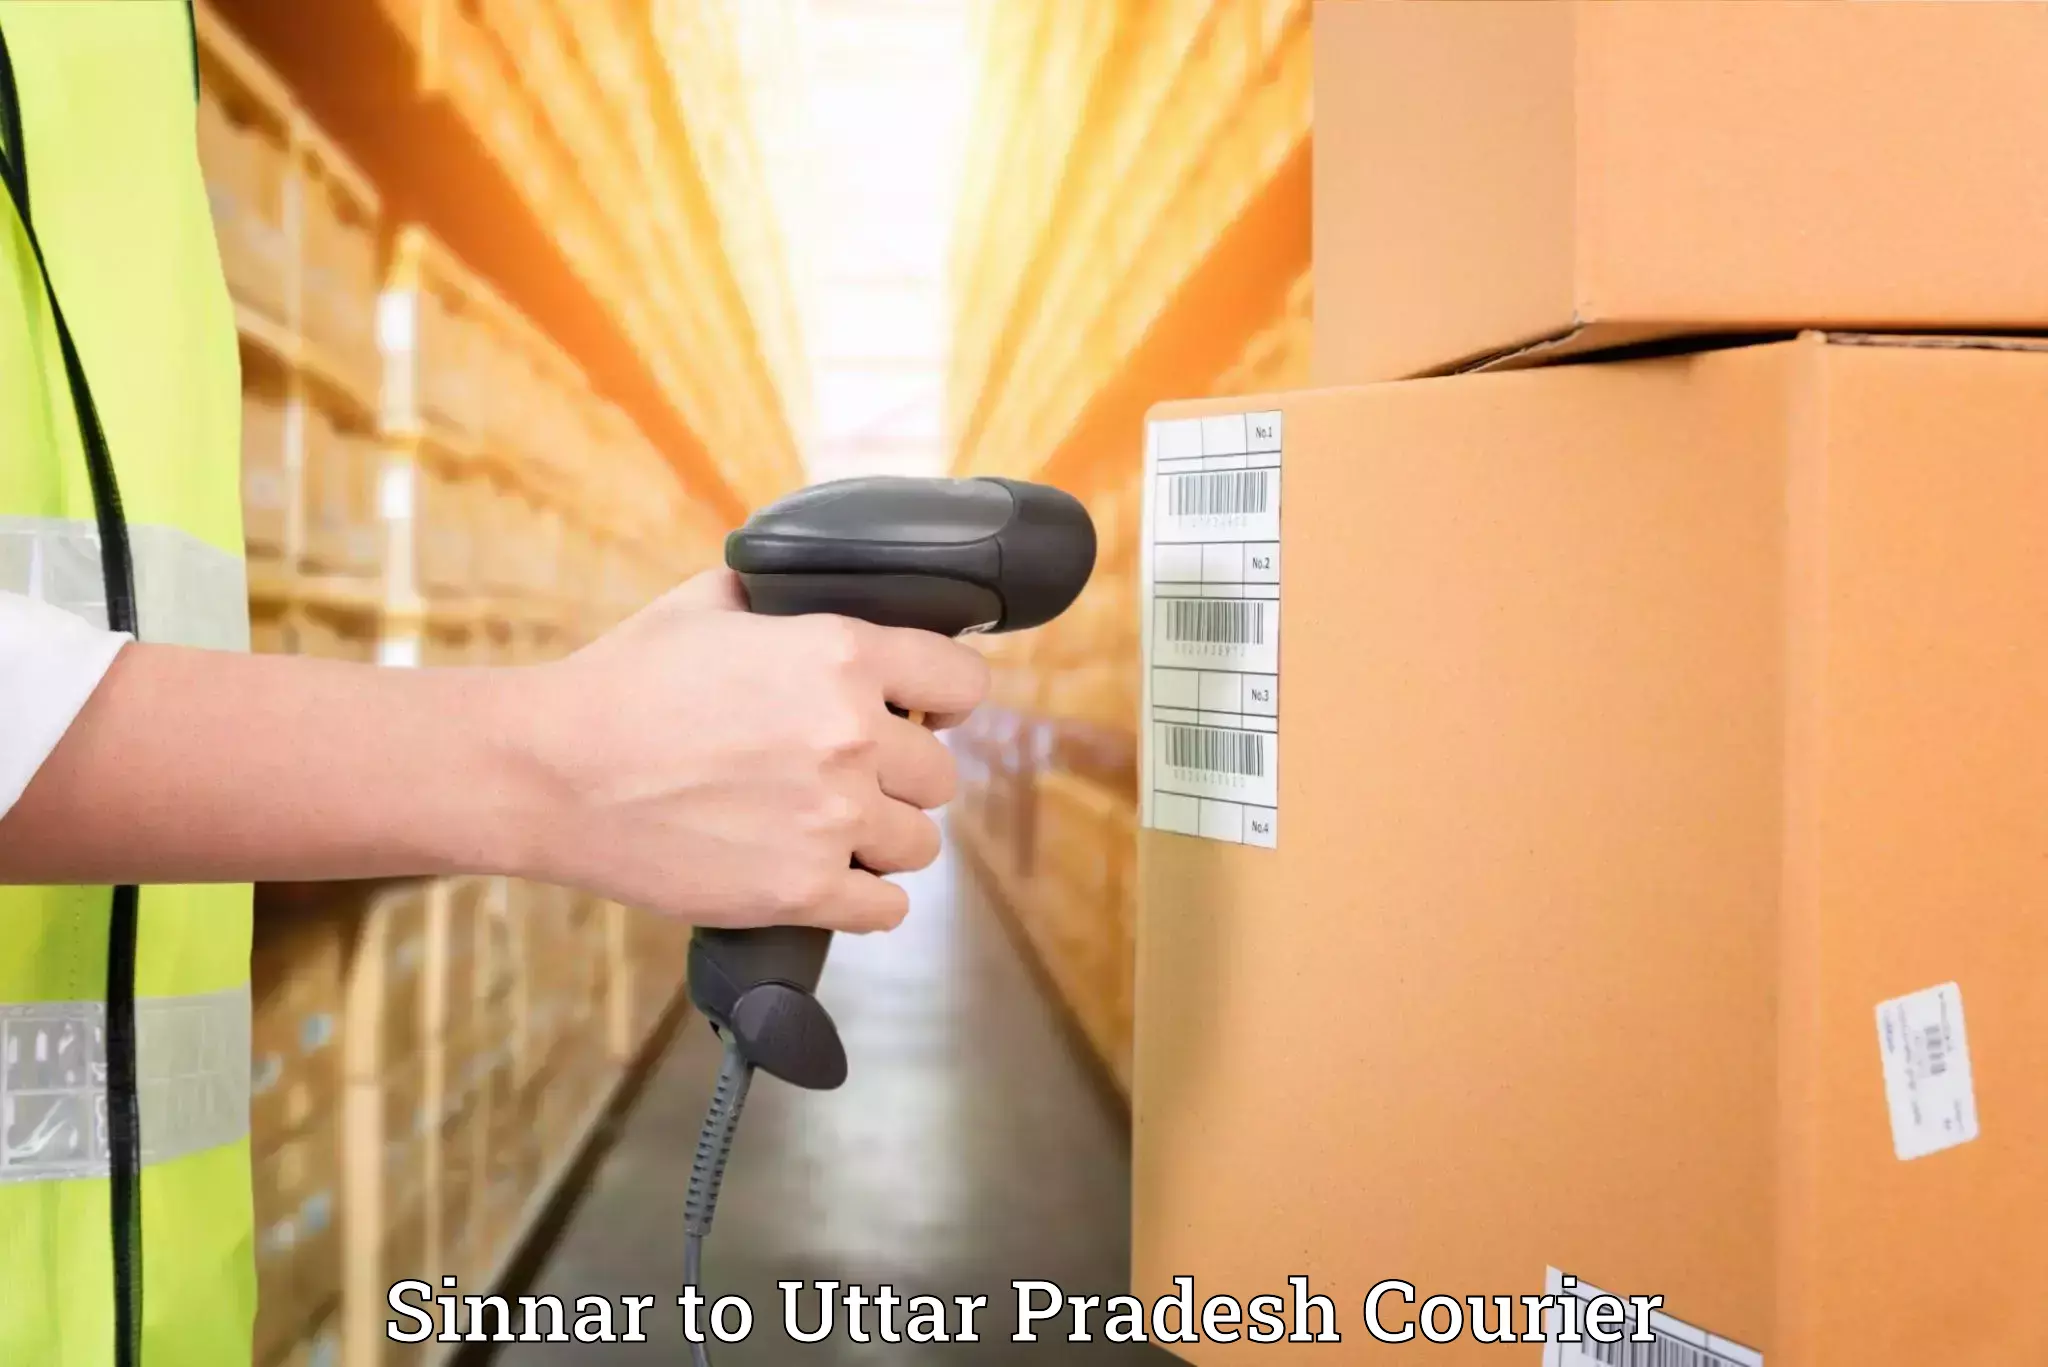 Full-service movers Sinnar to Uttar Pradesh